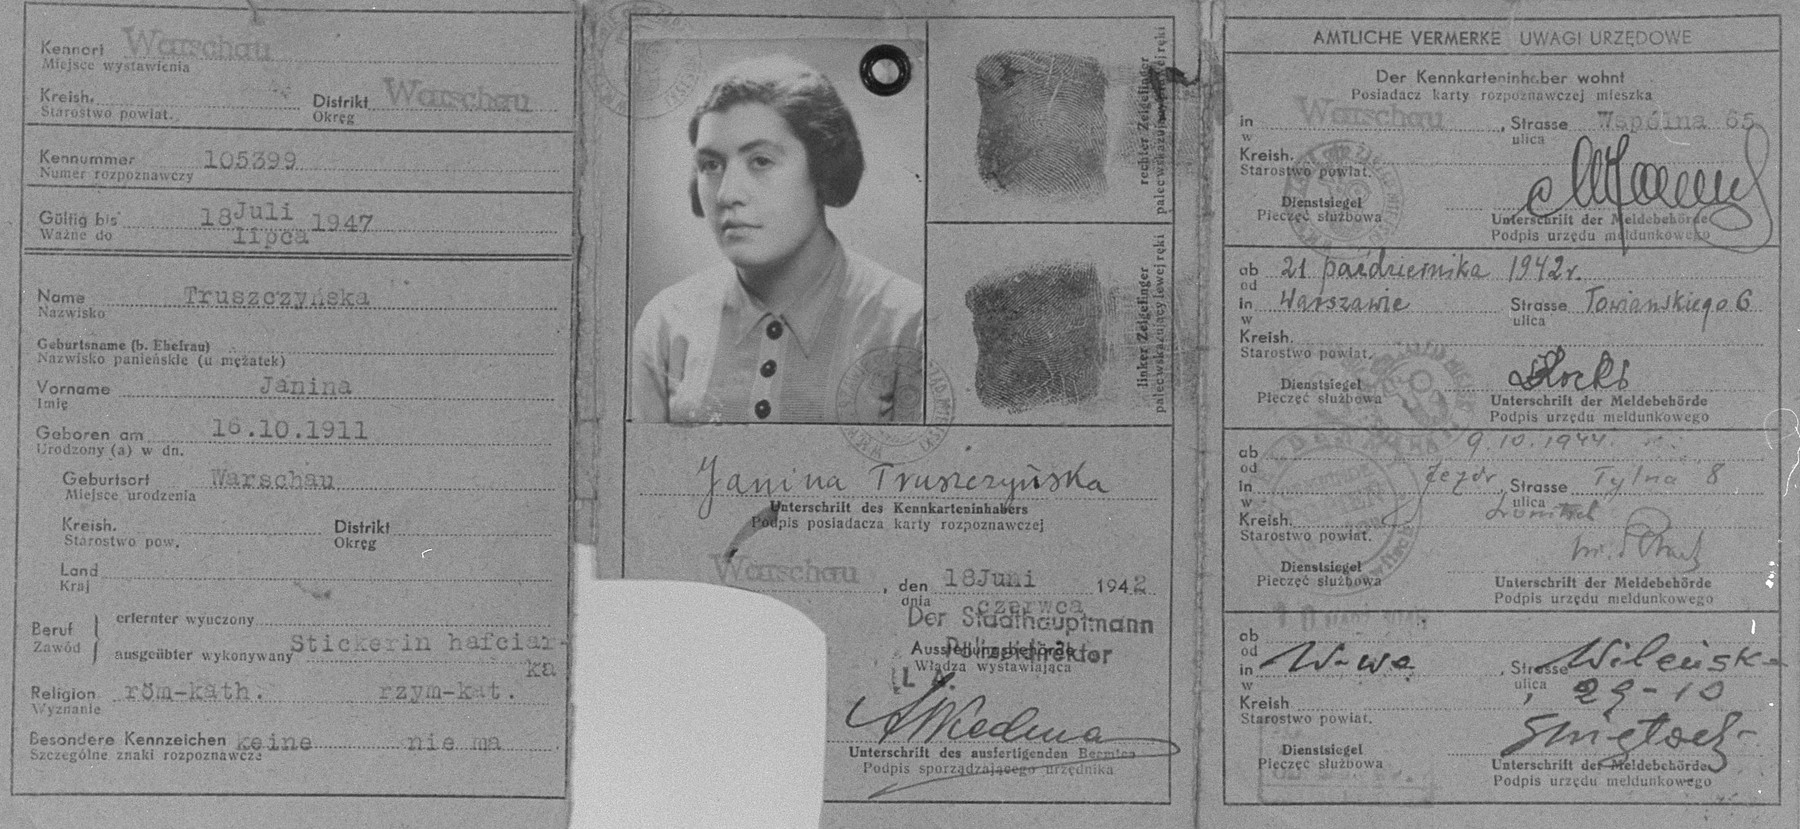 Πλαστή ταυτότητα για την Izabela Bieżuńska, μέλος του Żegota